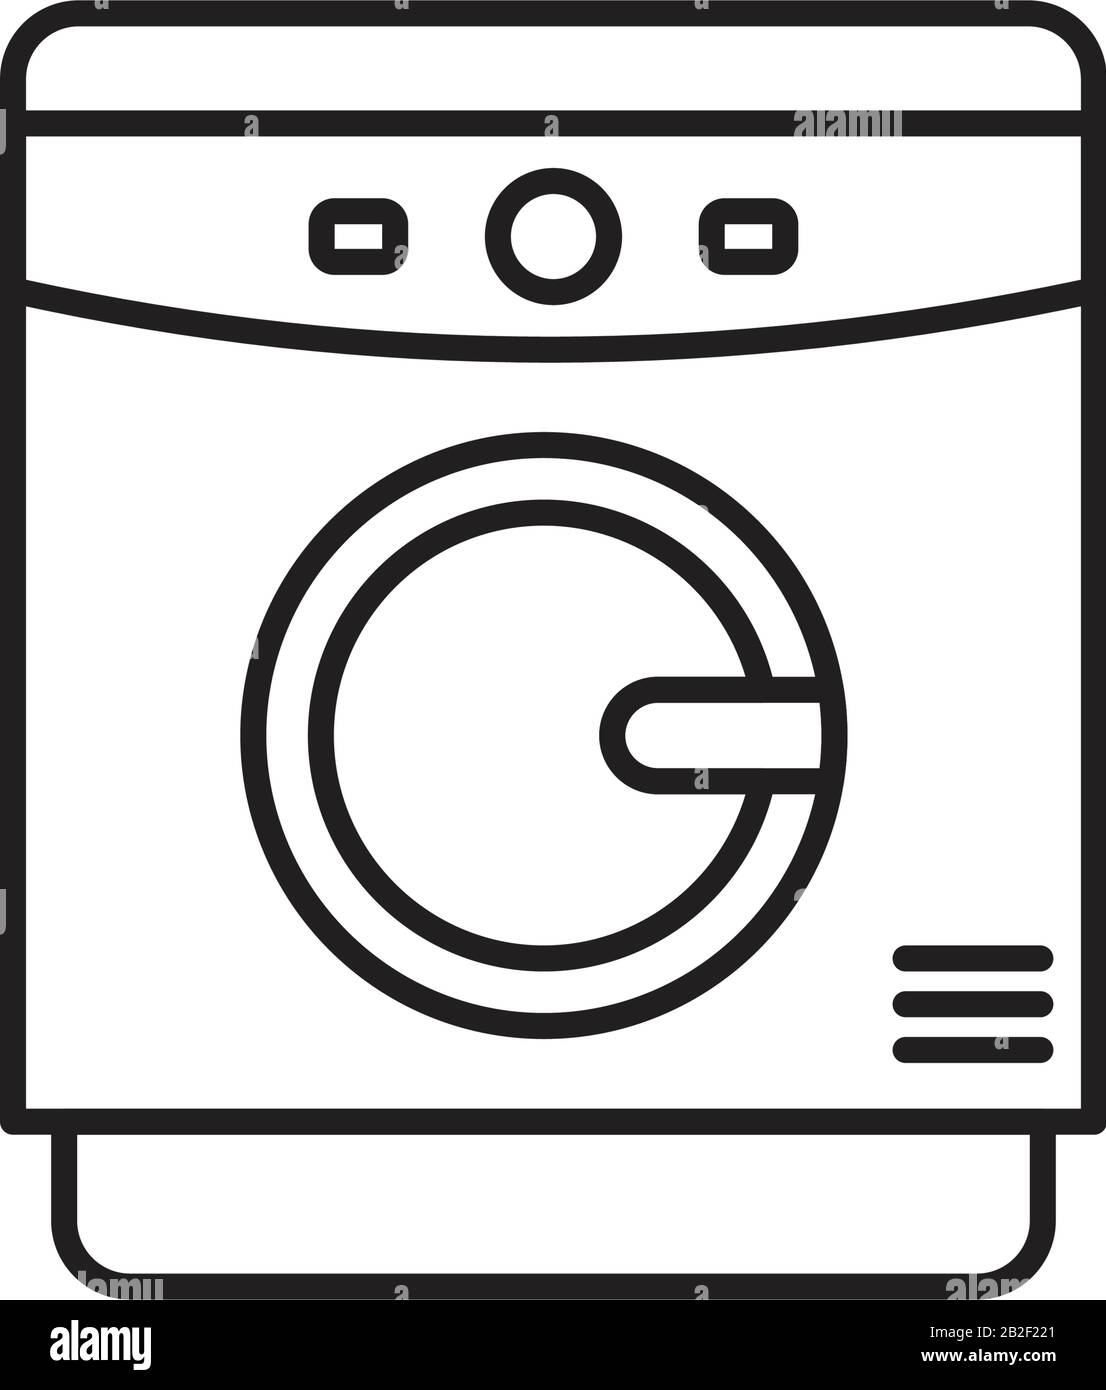 Farbvorlage für Waschmaschinensymbole schwarz editierbar. Symbol für Waschmaschinen Symbol für flache Vektorgrafiken für Grafik- und Webdesign. Stock Vektor